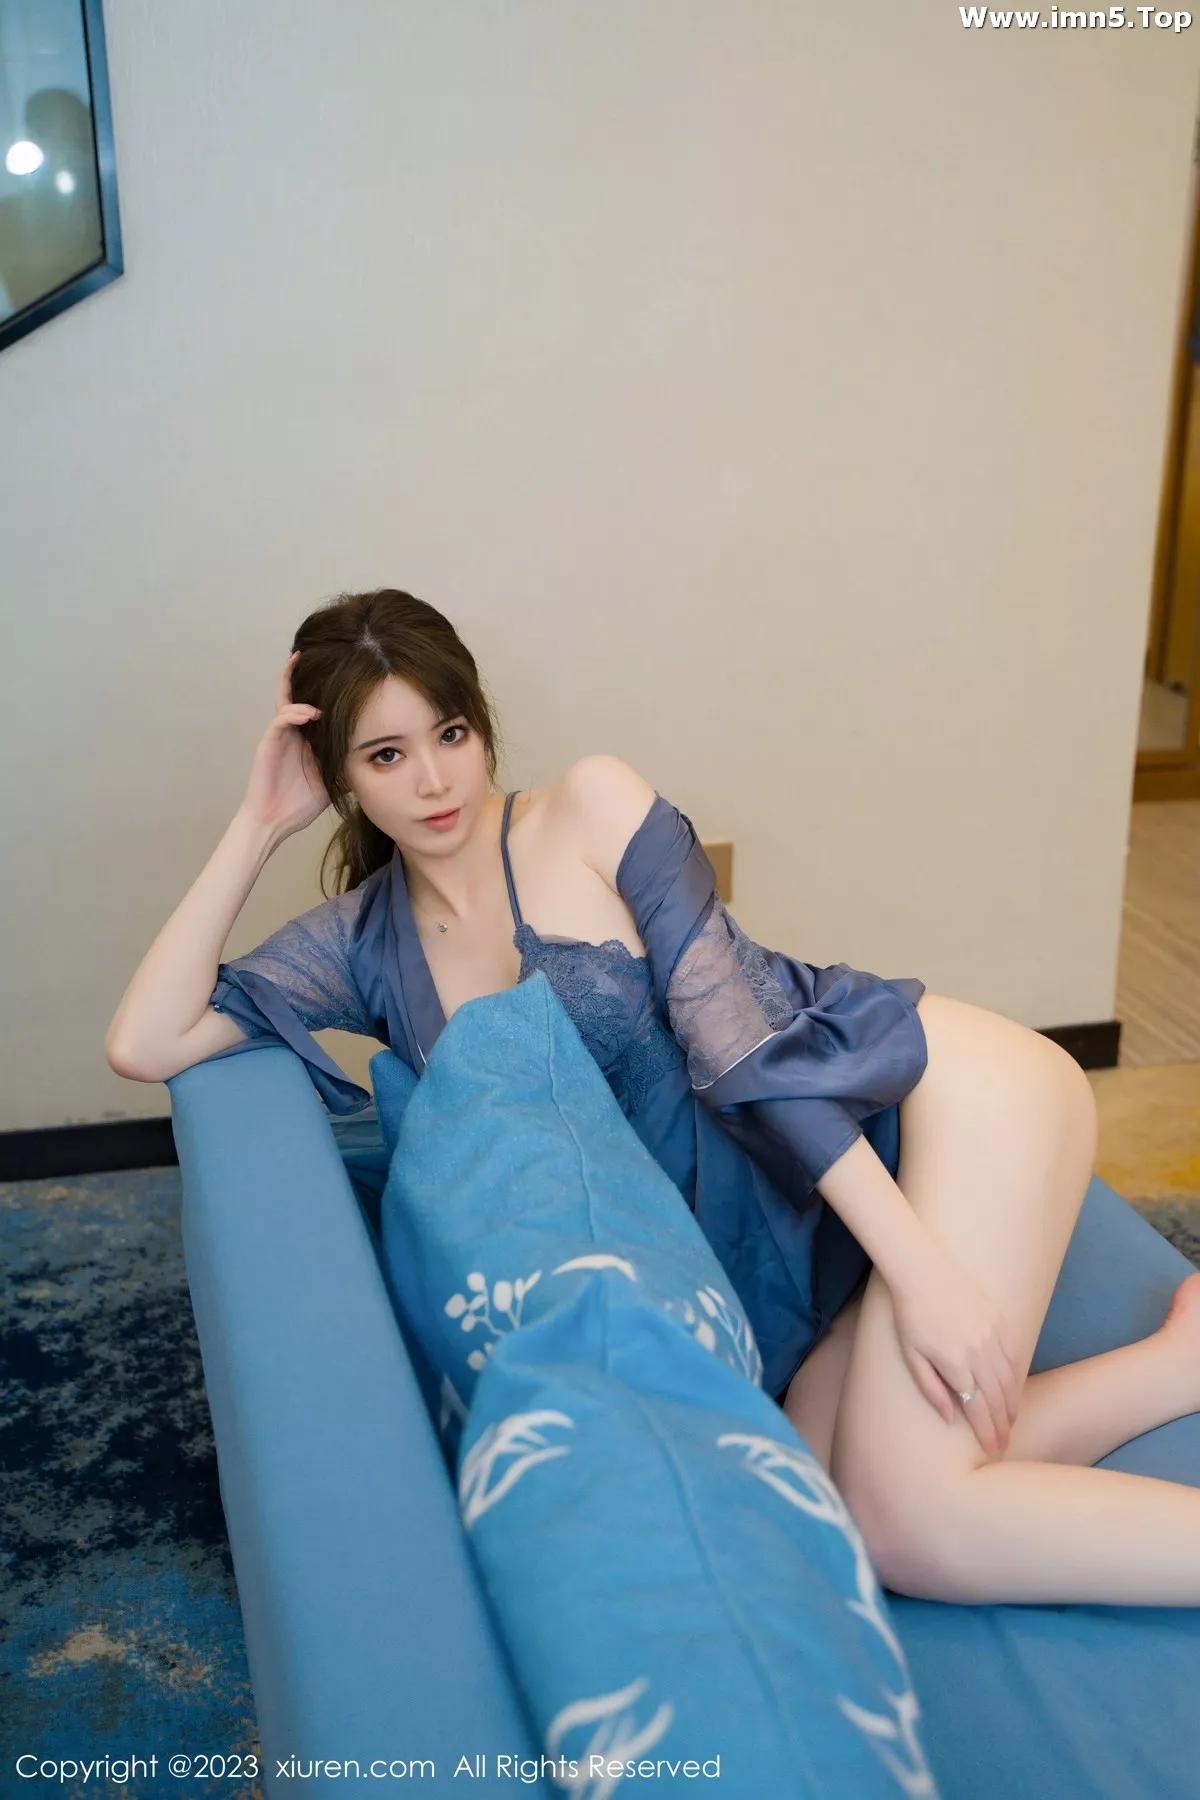 [XiuRen秀人网]No.7130_模特yoo优优性感蓝色蕾丝情趣睡裙半撩秀翘臀美腿迷人诱惑写真83P